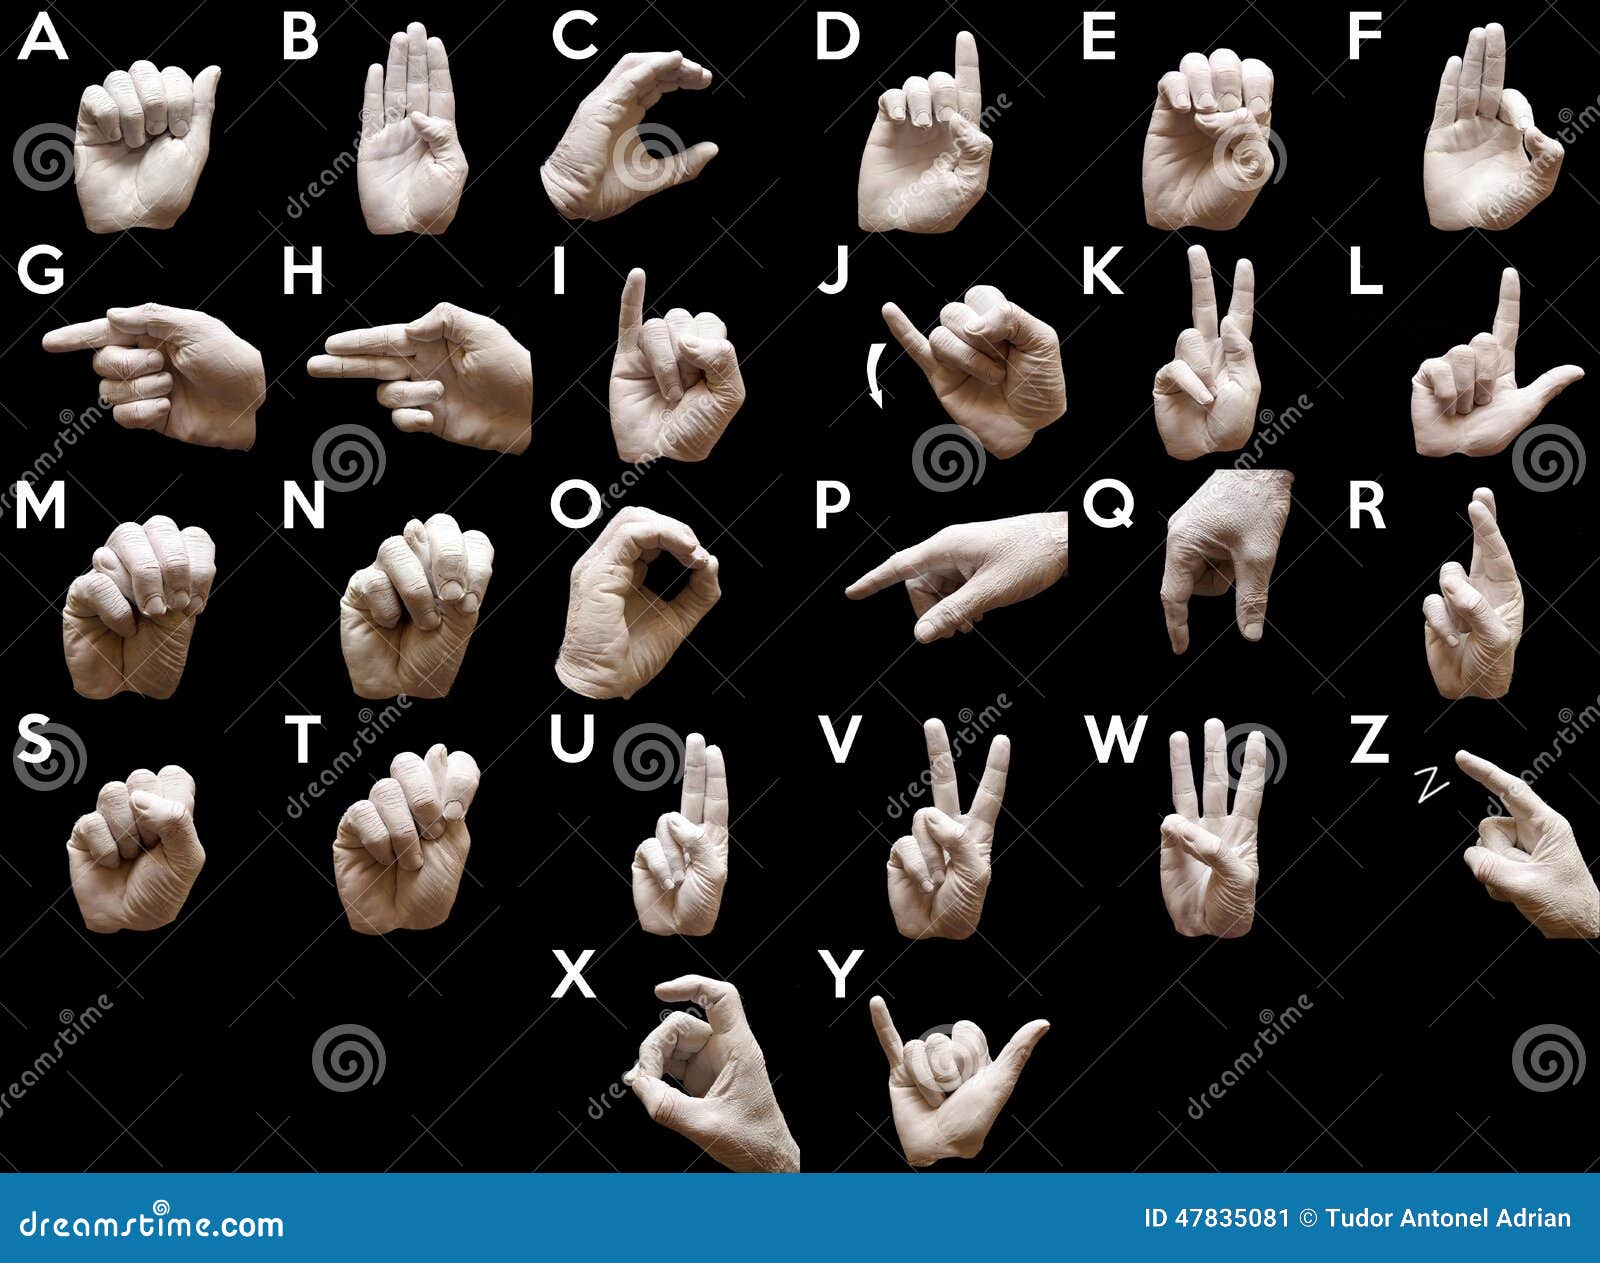 Глухой на английском. Язык жестов. Азбука жестов. Жестовый алфавит. Американский жестовый язык.